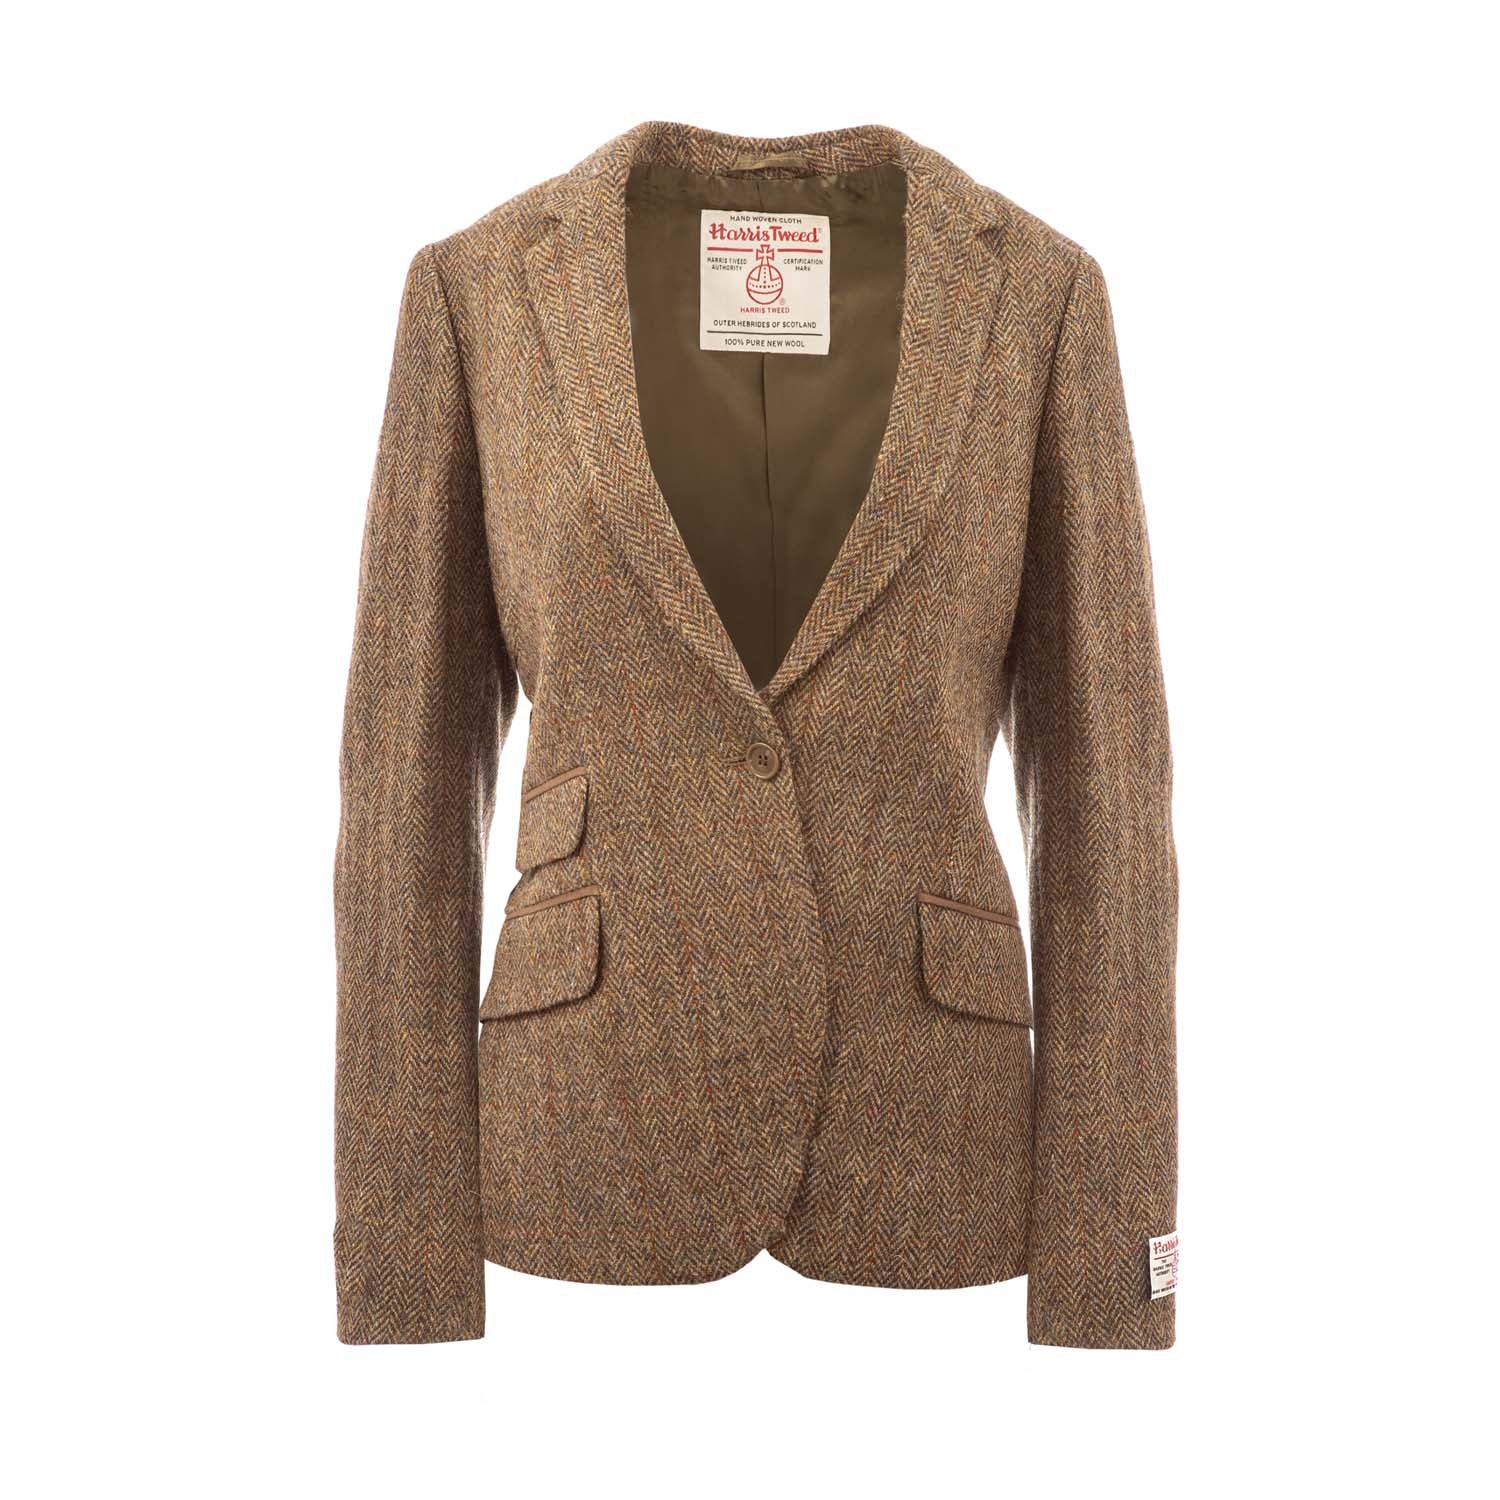 Tammy Jacket, Muir Harris Tweed : Harris Tweed Shop, Buy authentic